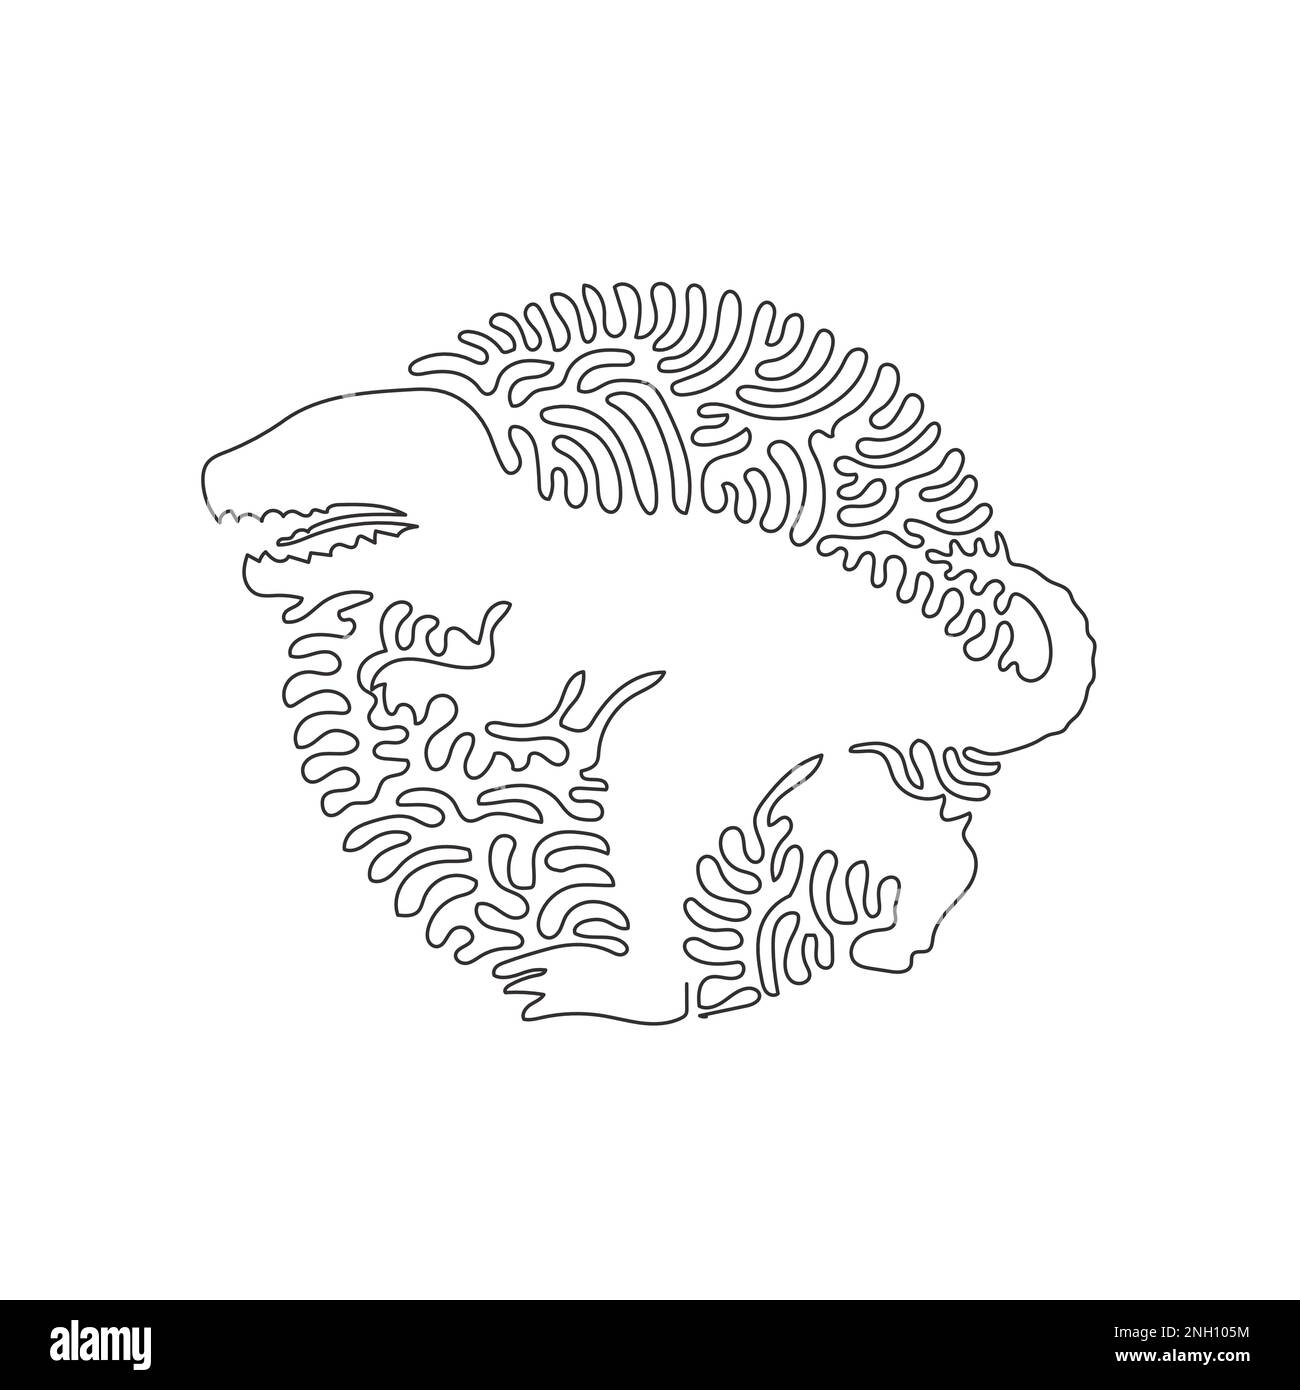 Durchgehende, eine Kurve darstellende Linienzeichnung der wildesten Raubtiere abstrakter Kunst. Einzeilige editierbare Schlagvektordarstellung des Tyrannosaurus Stock Vektor